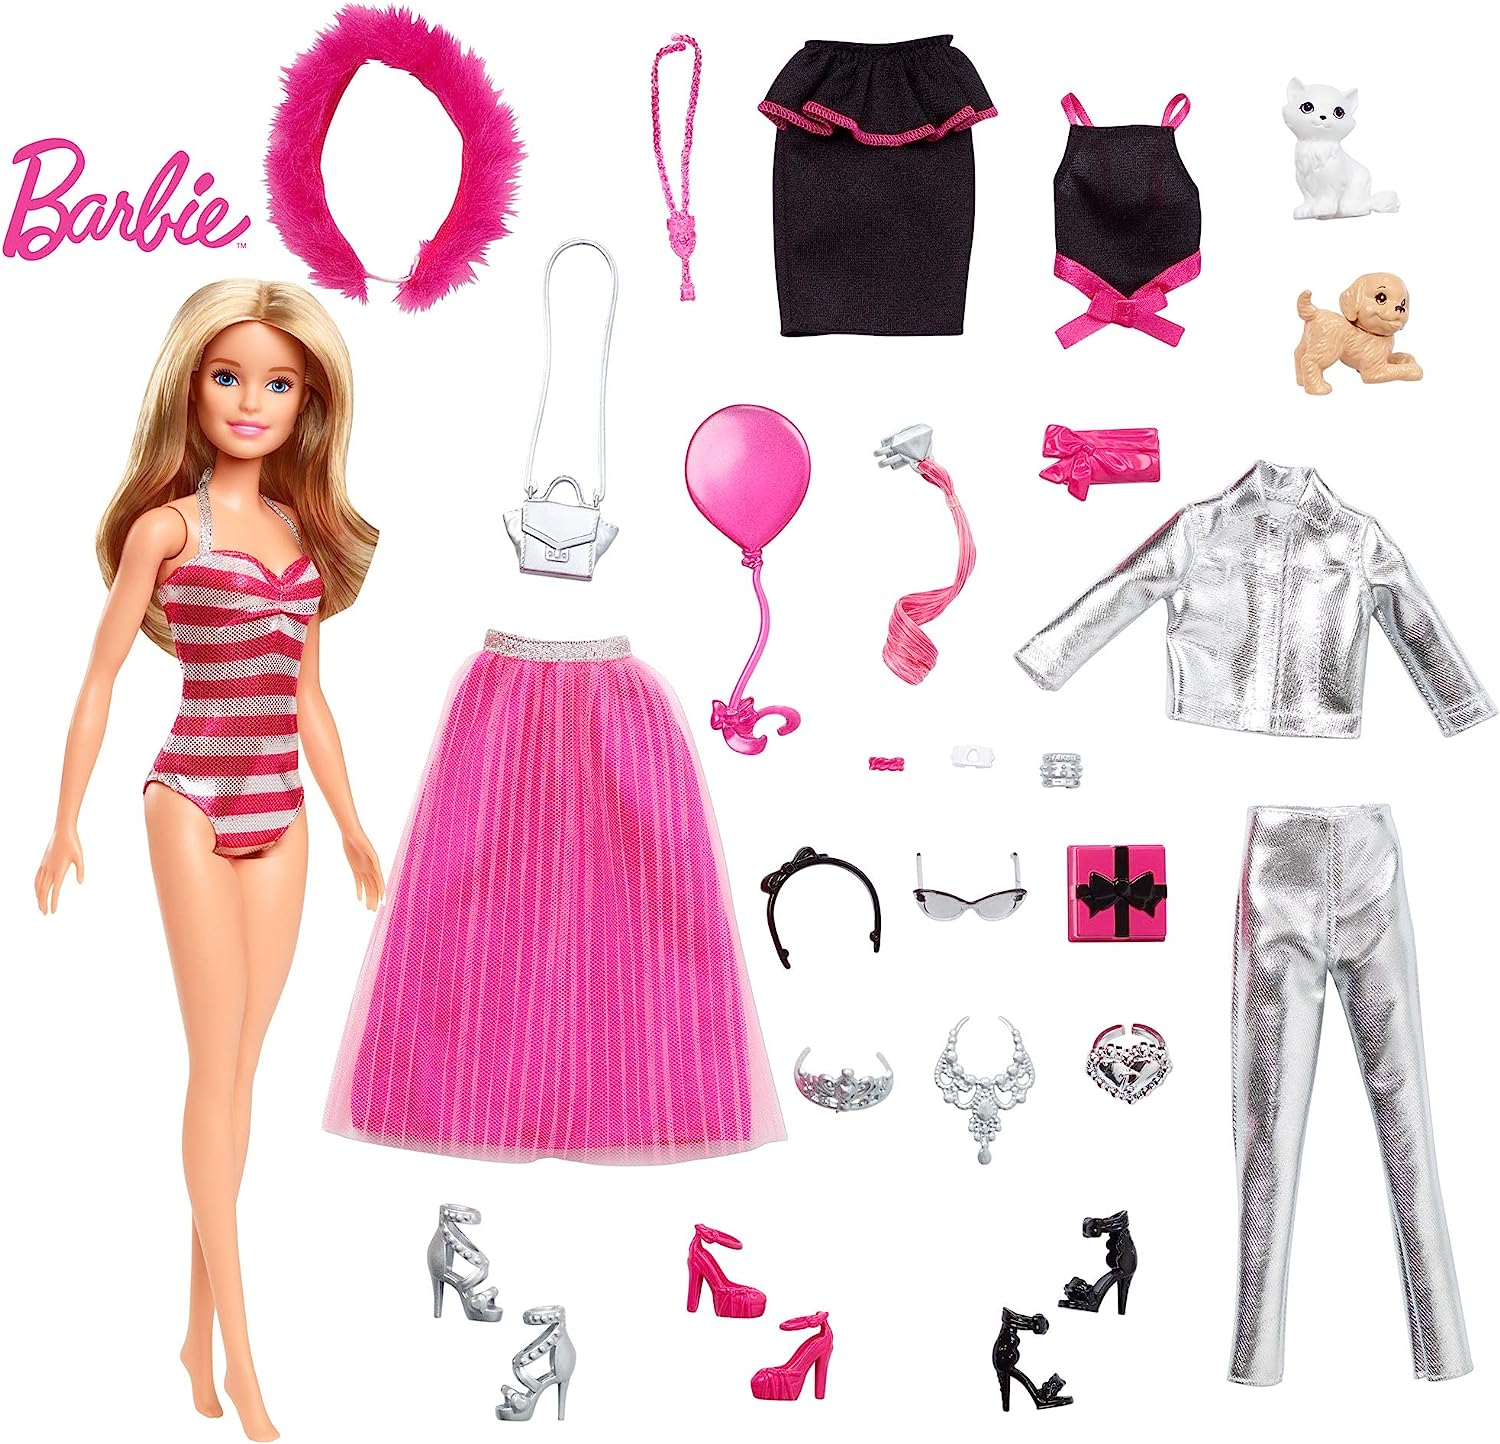 バービー Barbie アドベントカレンダー 1日目にバービー 毎日の楽しみ